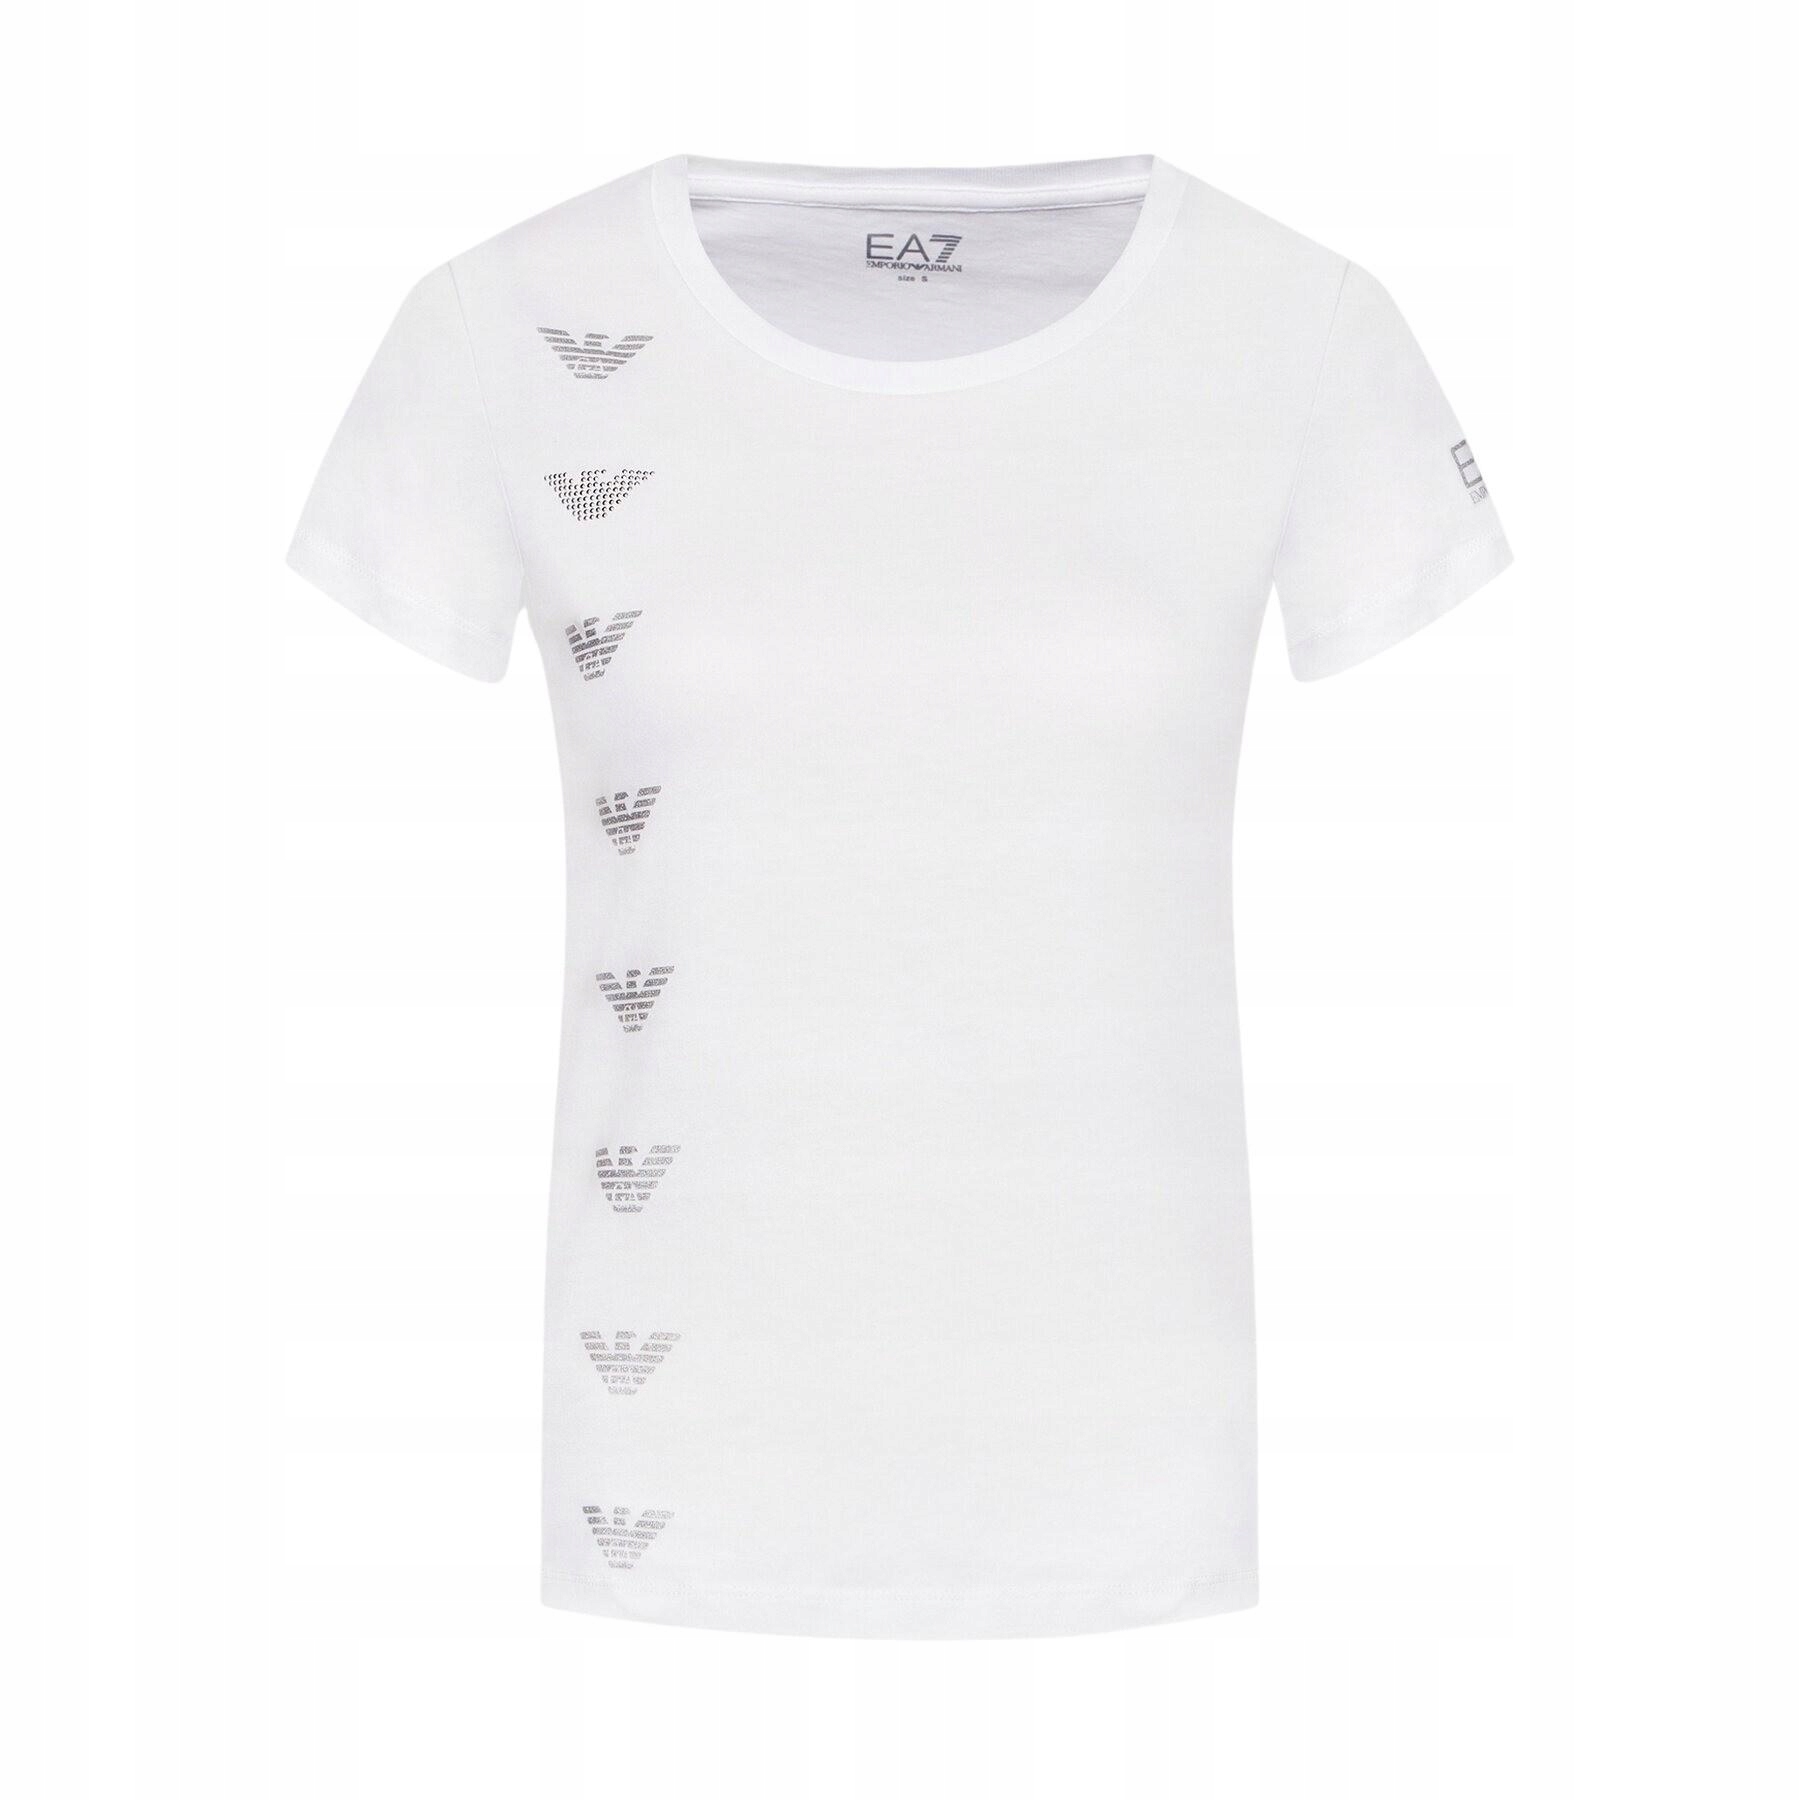 EMPORIO ARMANI EA7 štýlové dámske tričko WHITE L